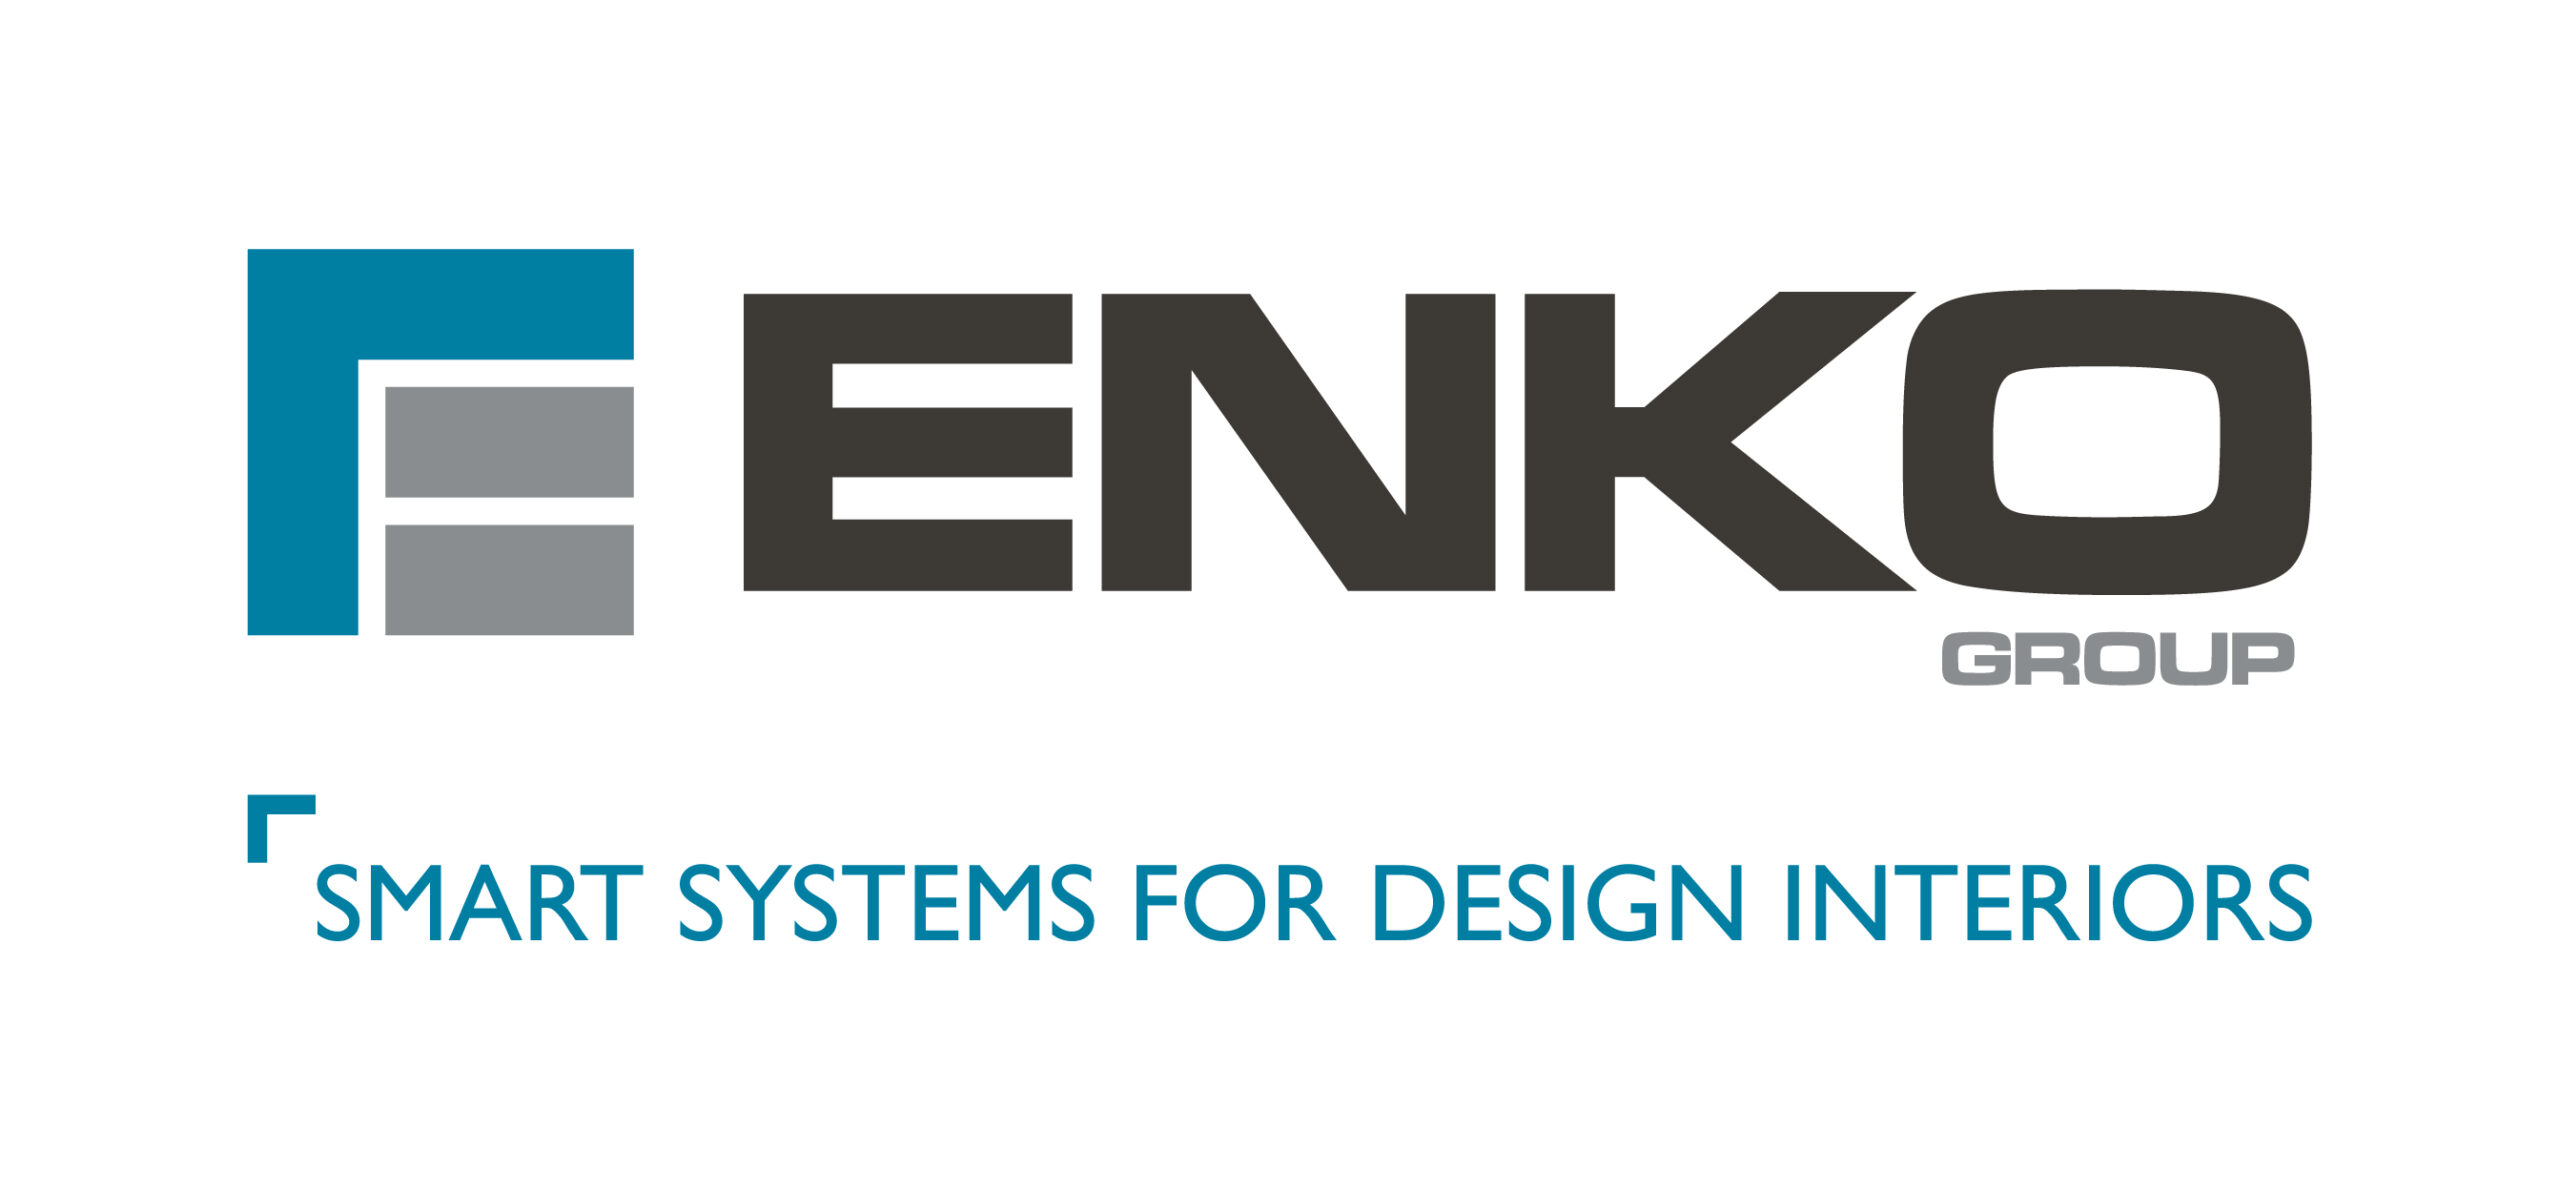 Enko Group sponsor logo